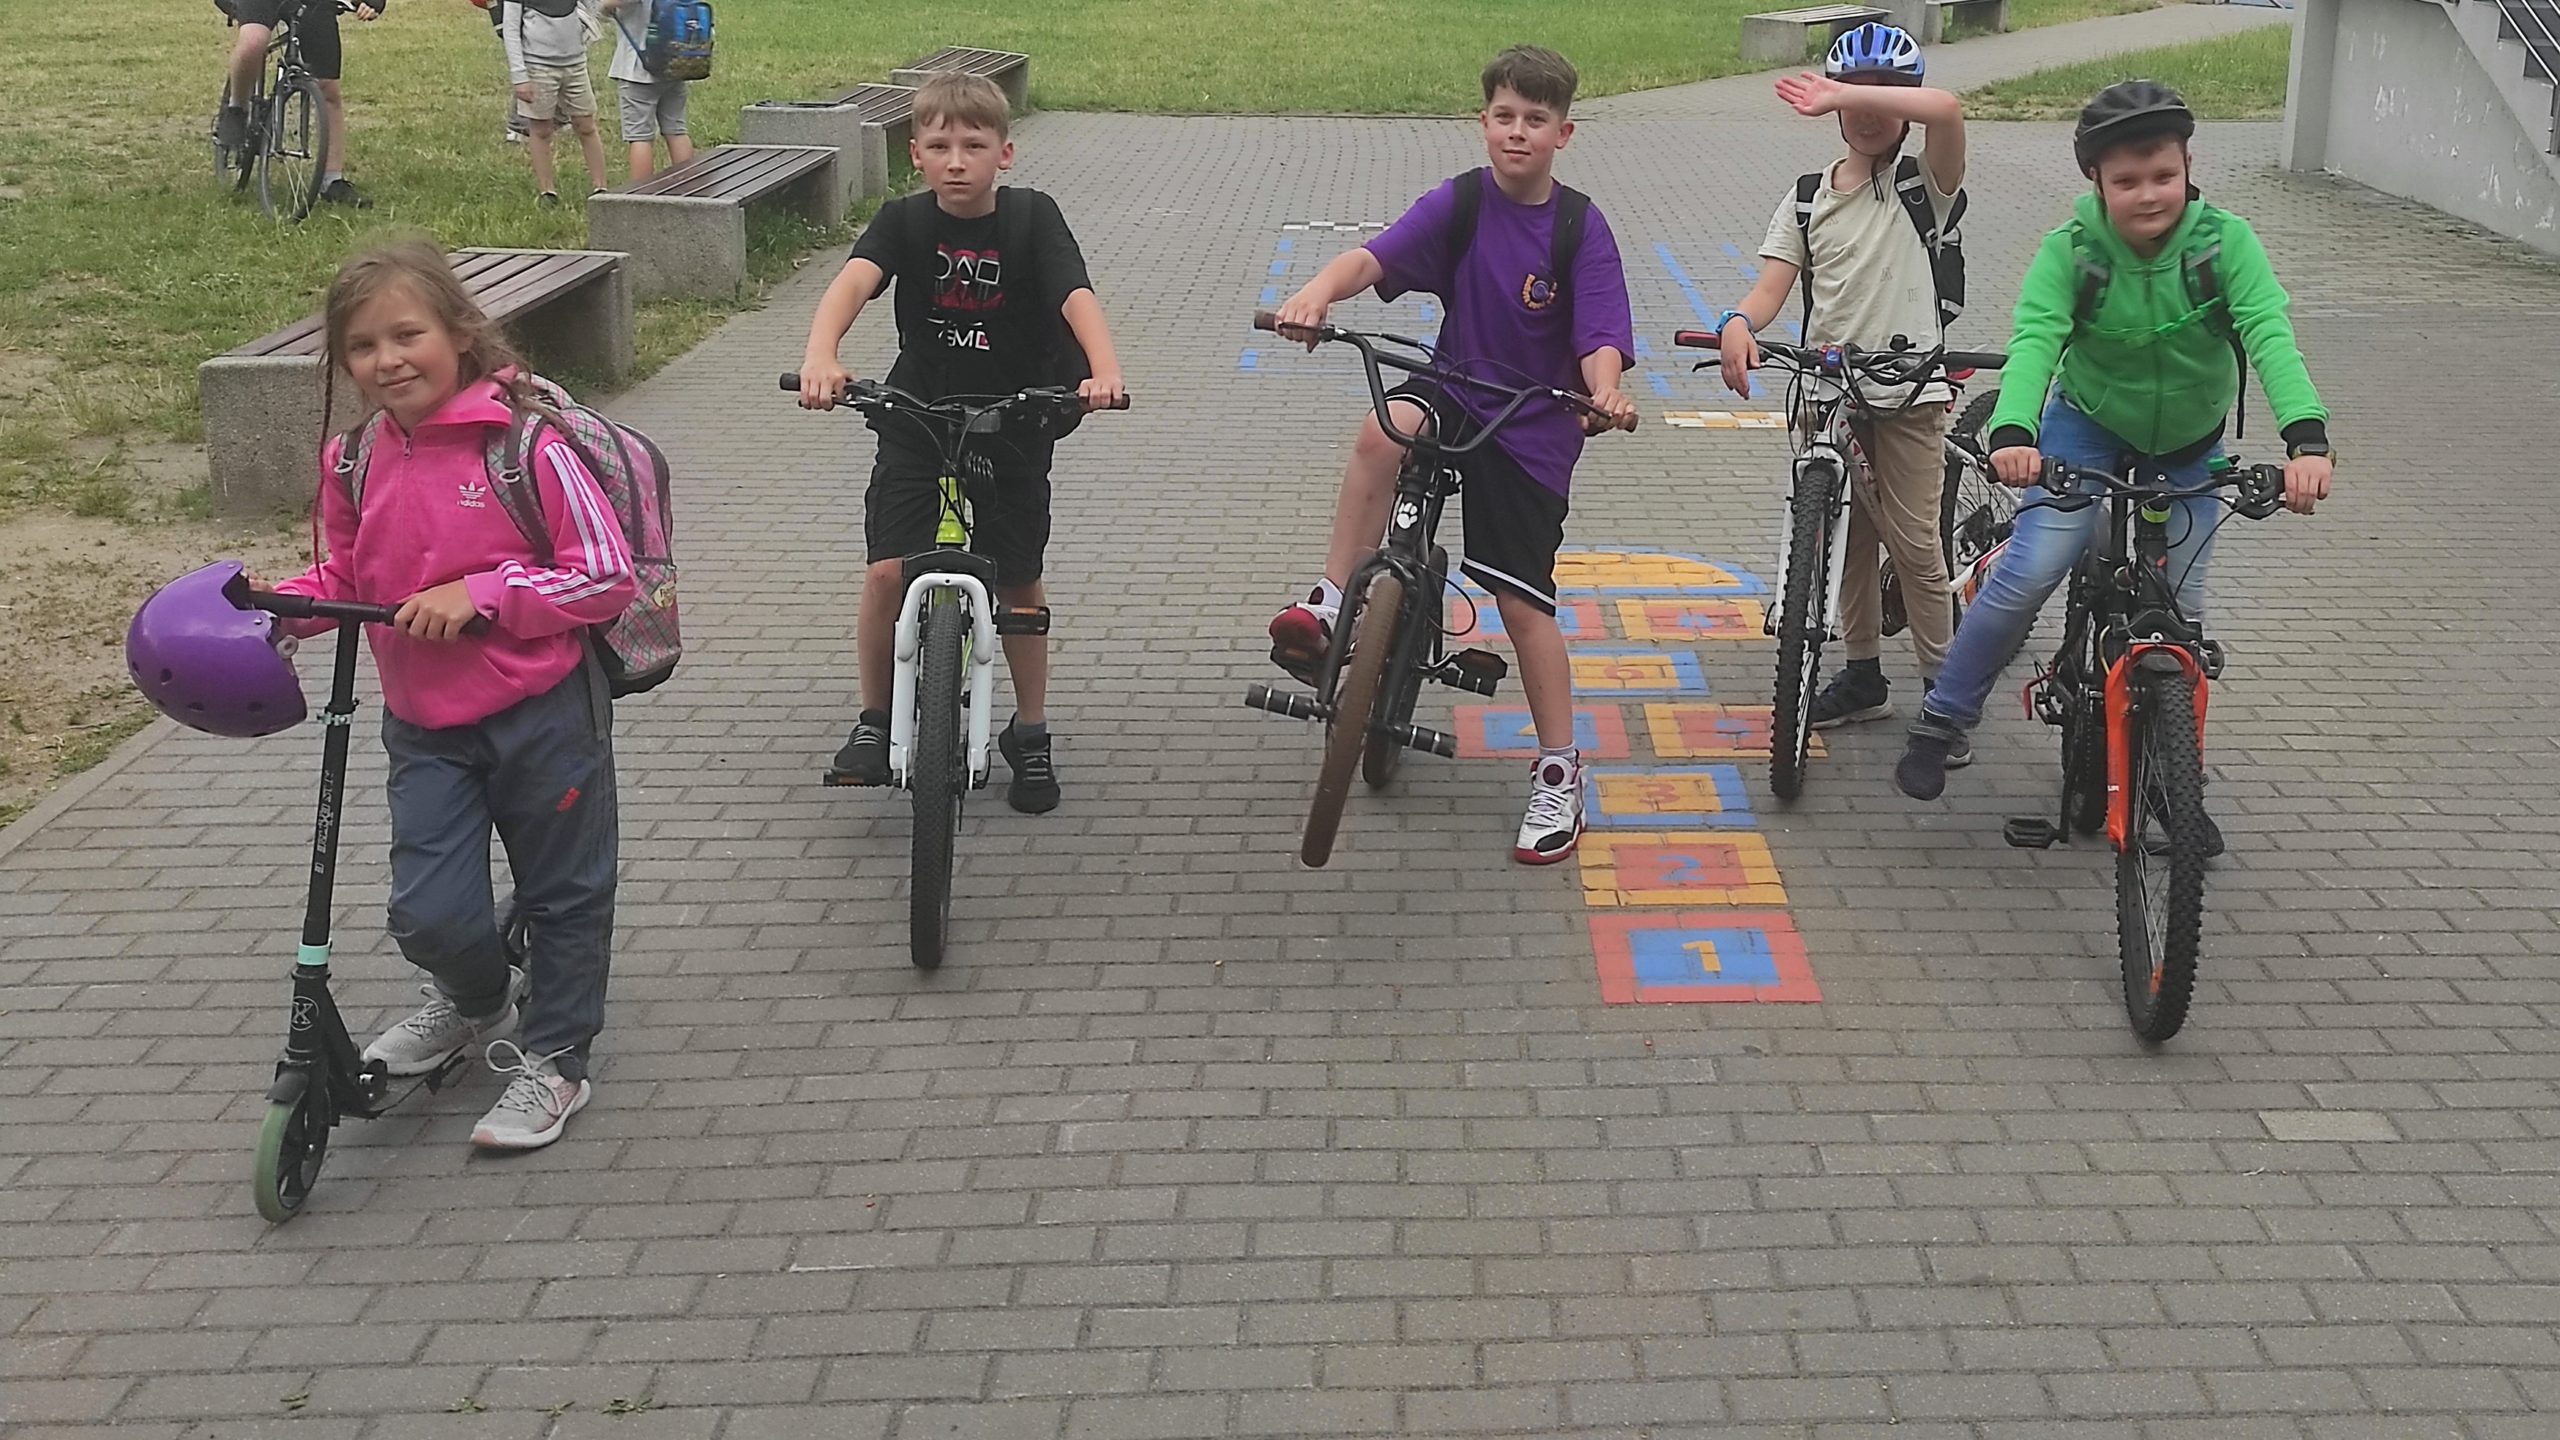 5 uczniów klasy 3b ustawionych w rzędzie. Od lewej dziewczynka na hulajnodze, pozostali chłopcy na rowerach.